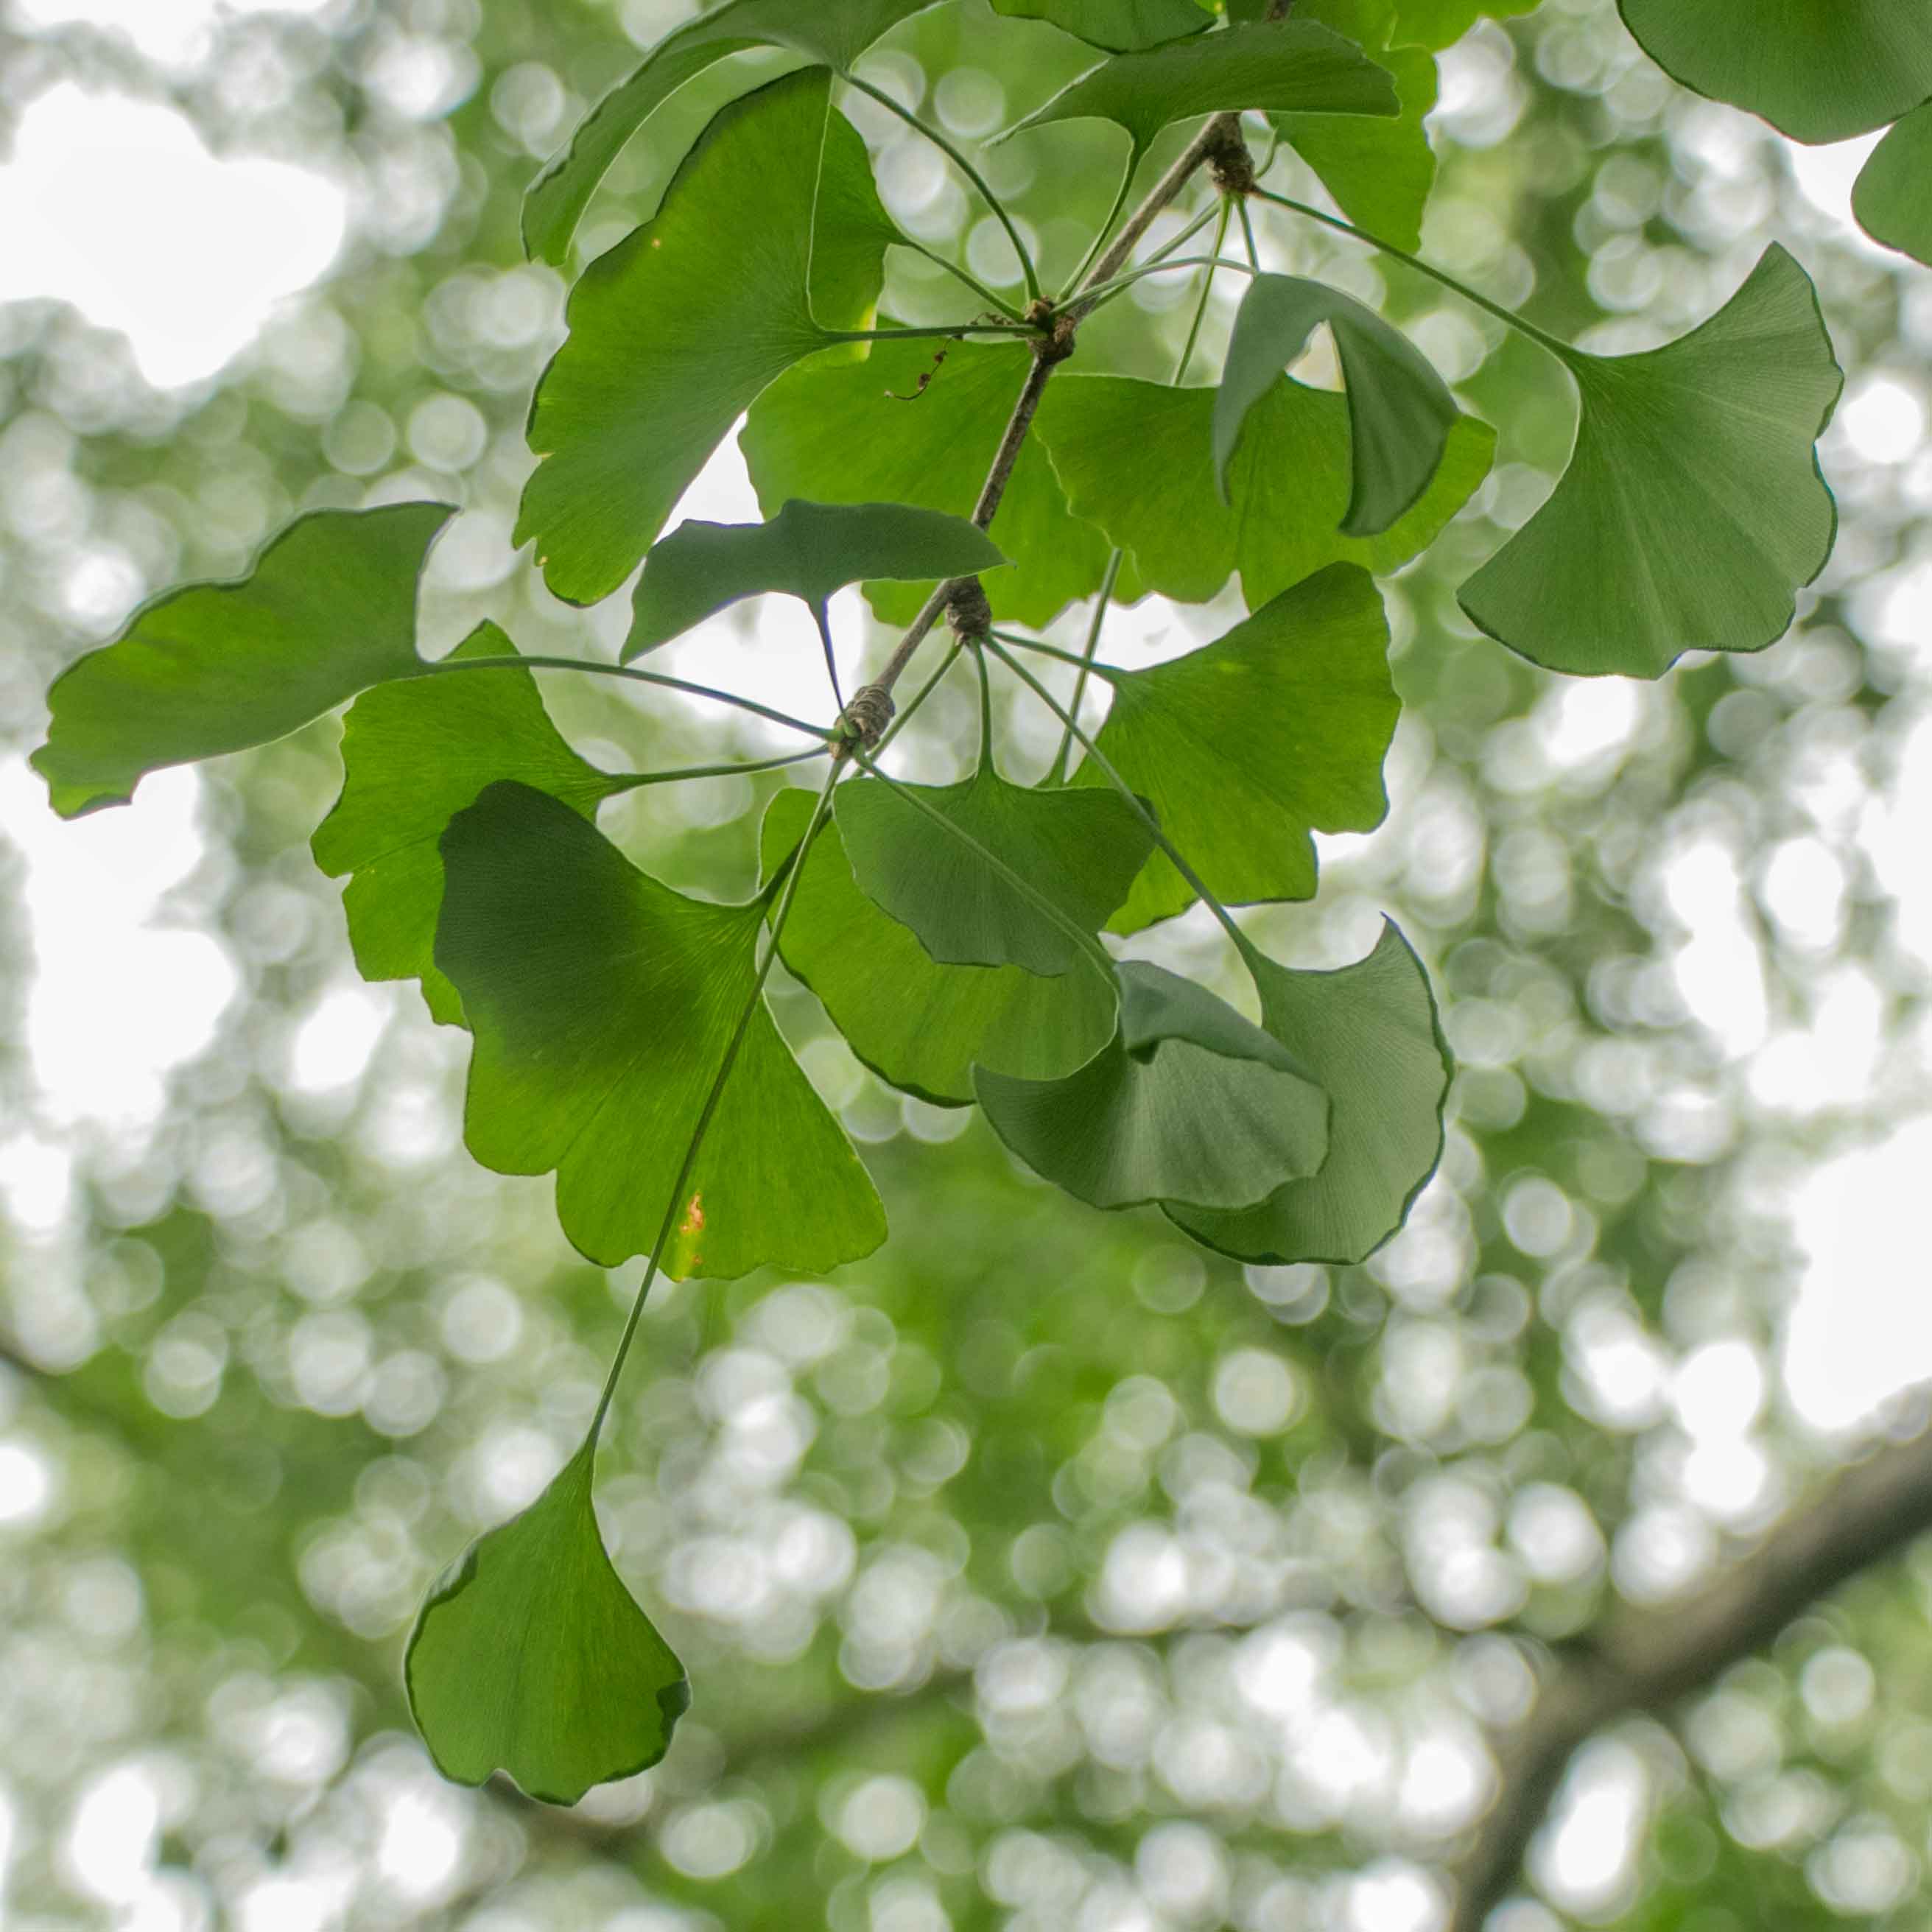 The Asa Gray Ginkgo tree